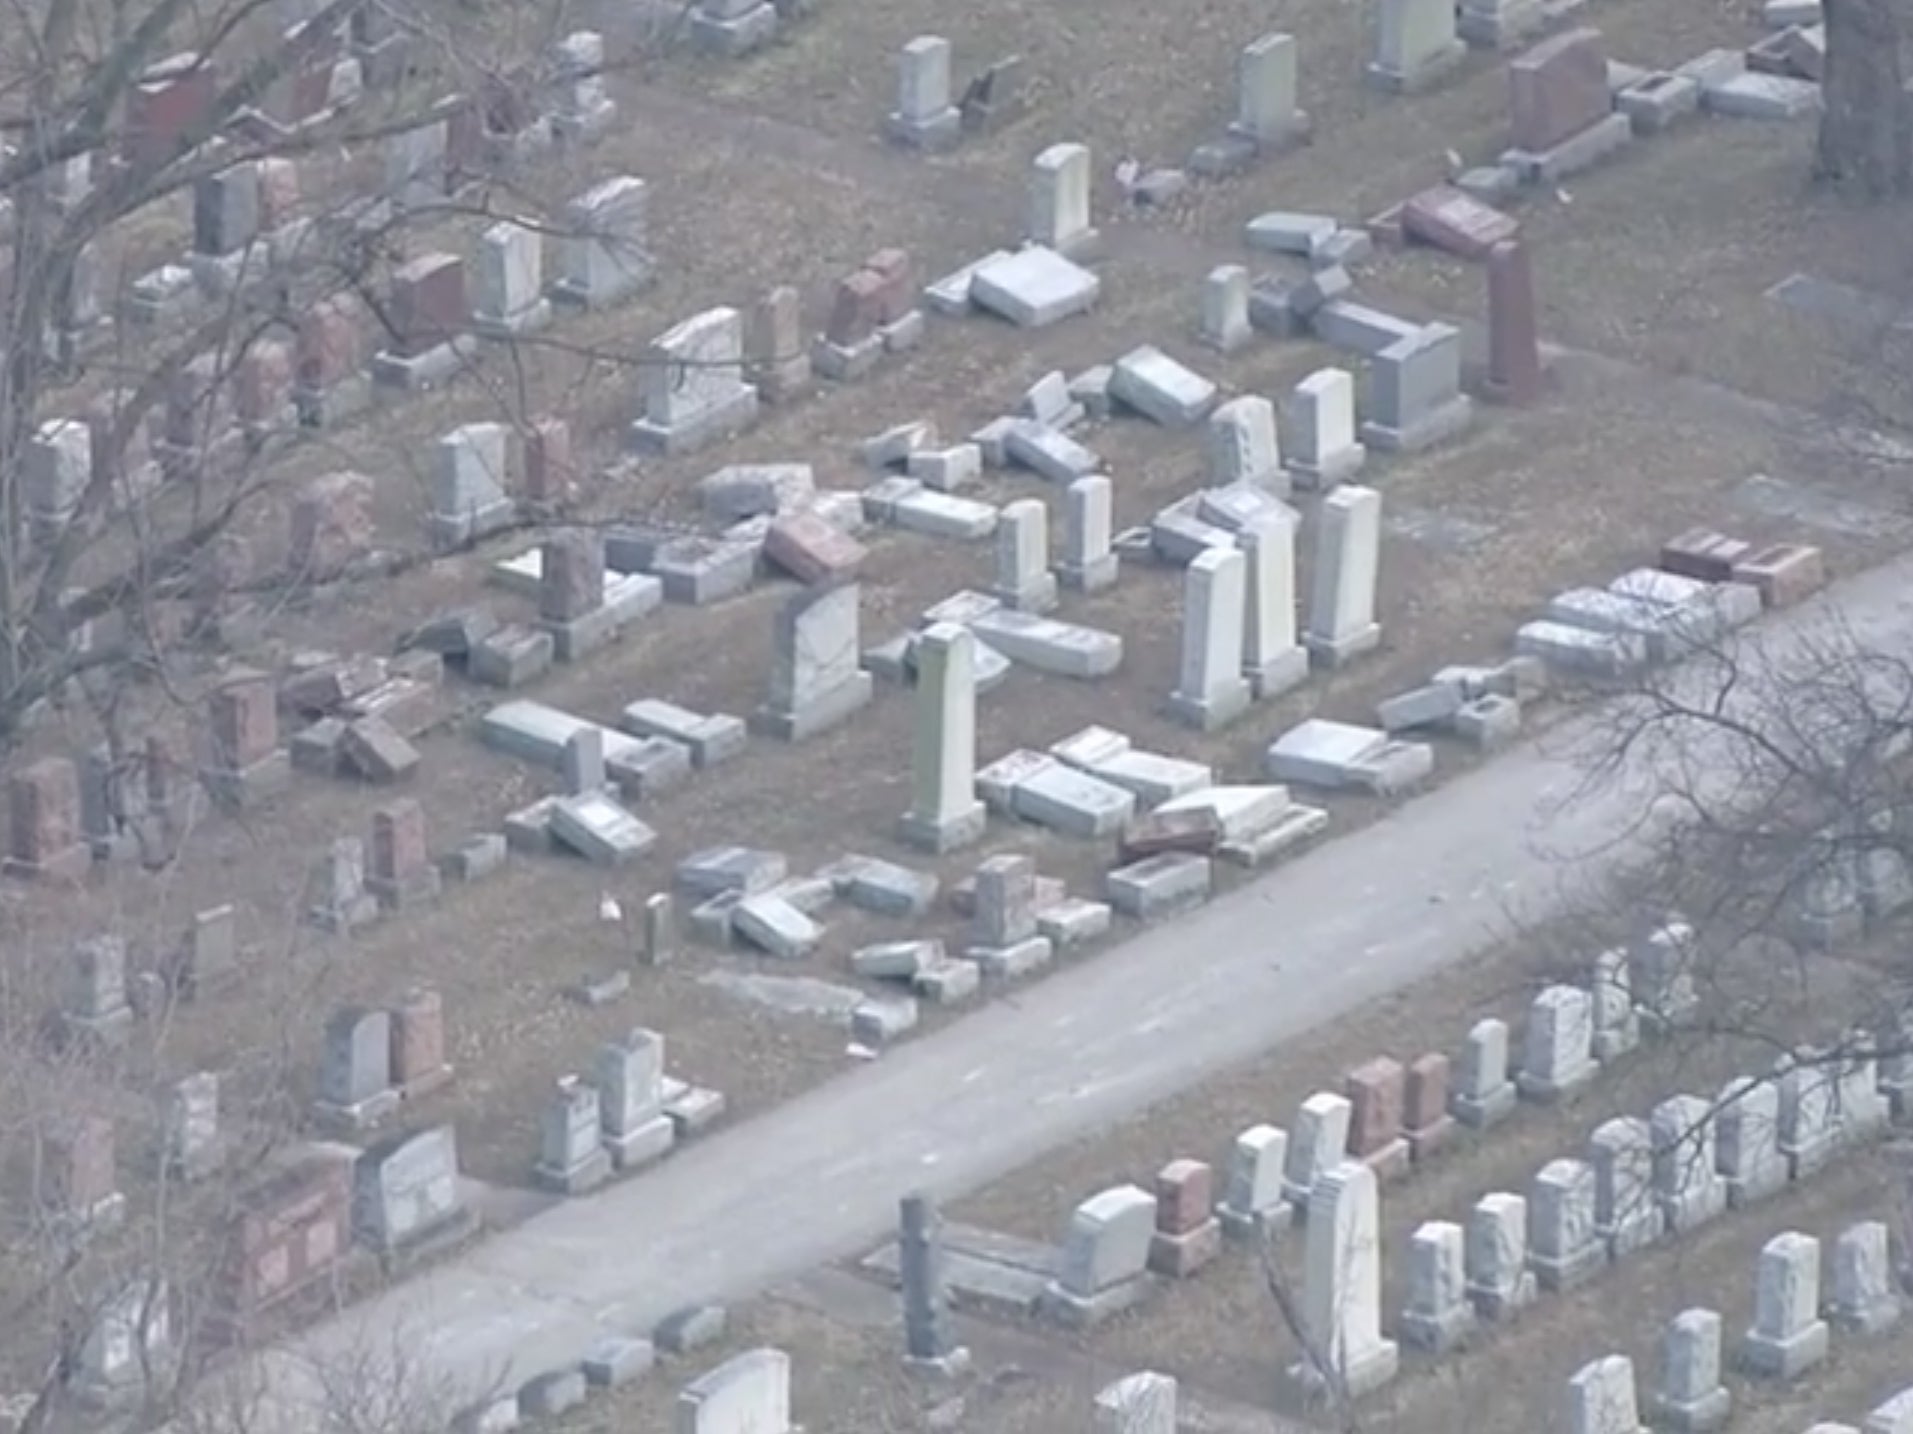 Dozens of headstones overturned at Chesed Shel Emeth Cemetery